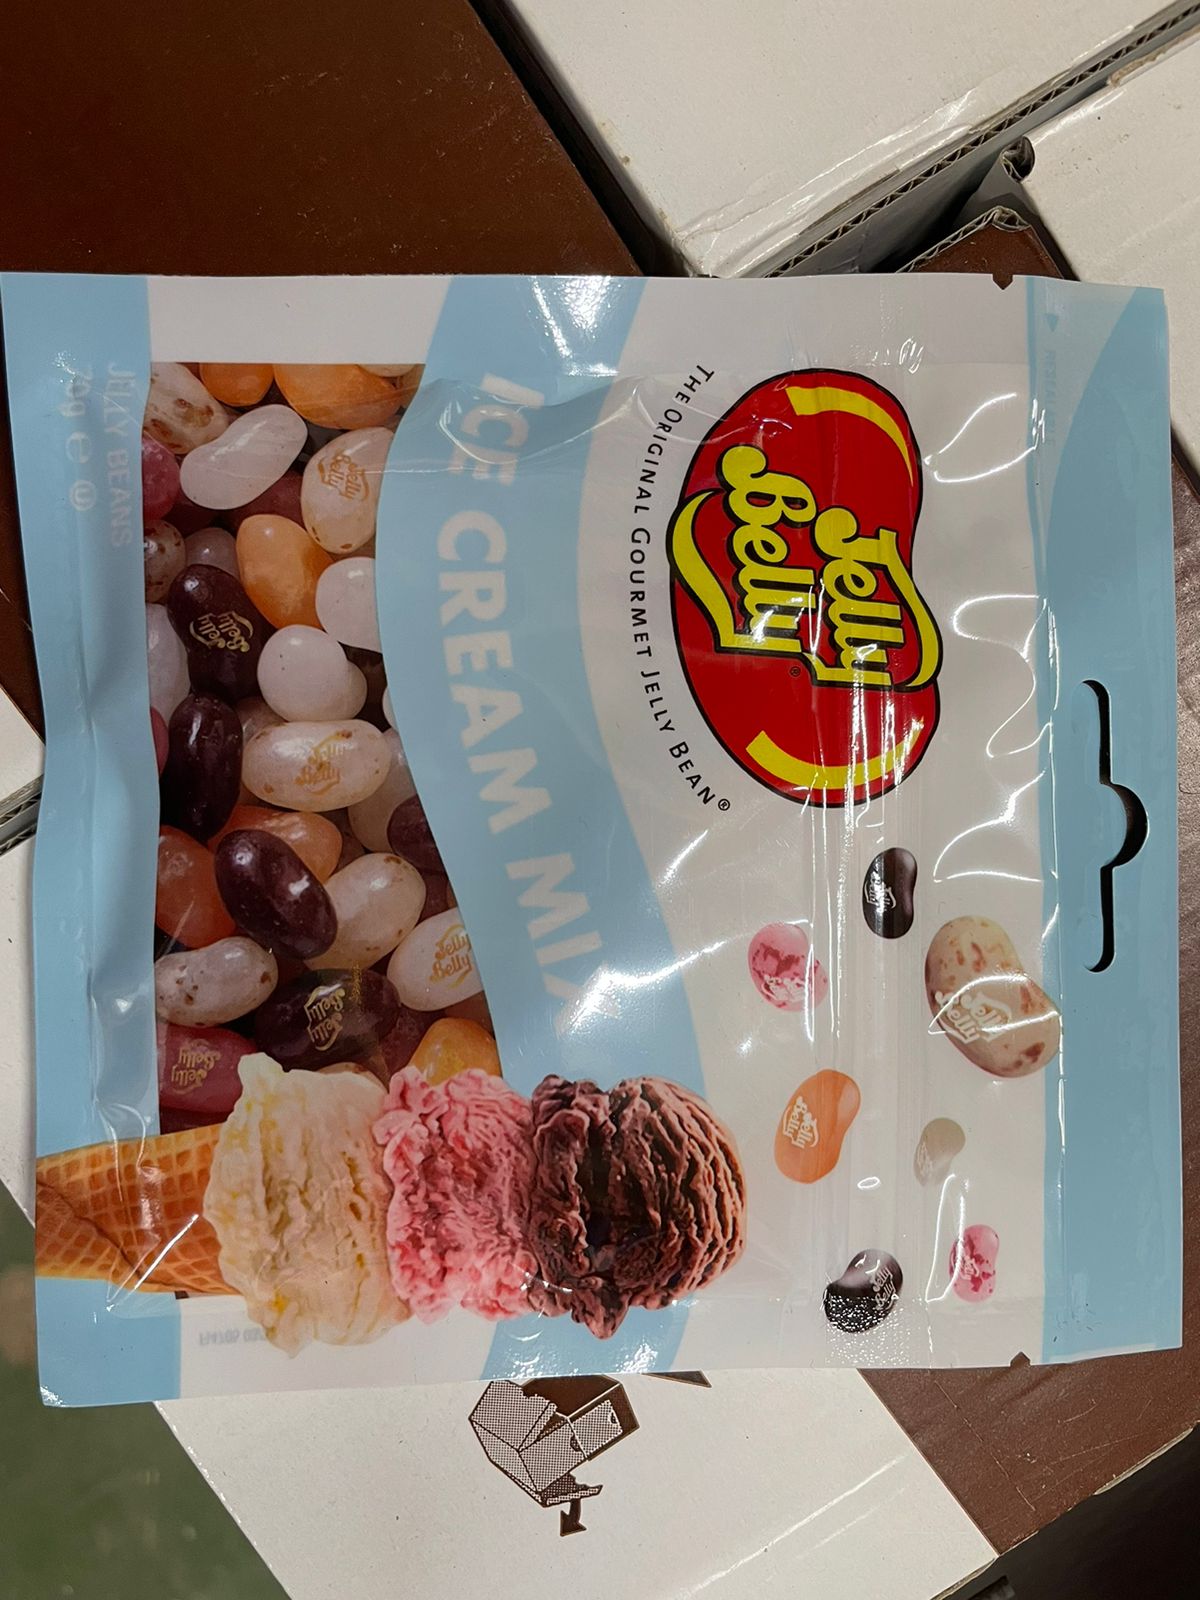 Драже жевательное "Jelly Belly" ассорти мороженое 70г пакет